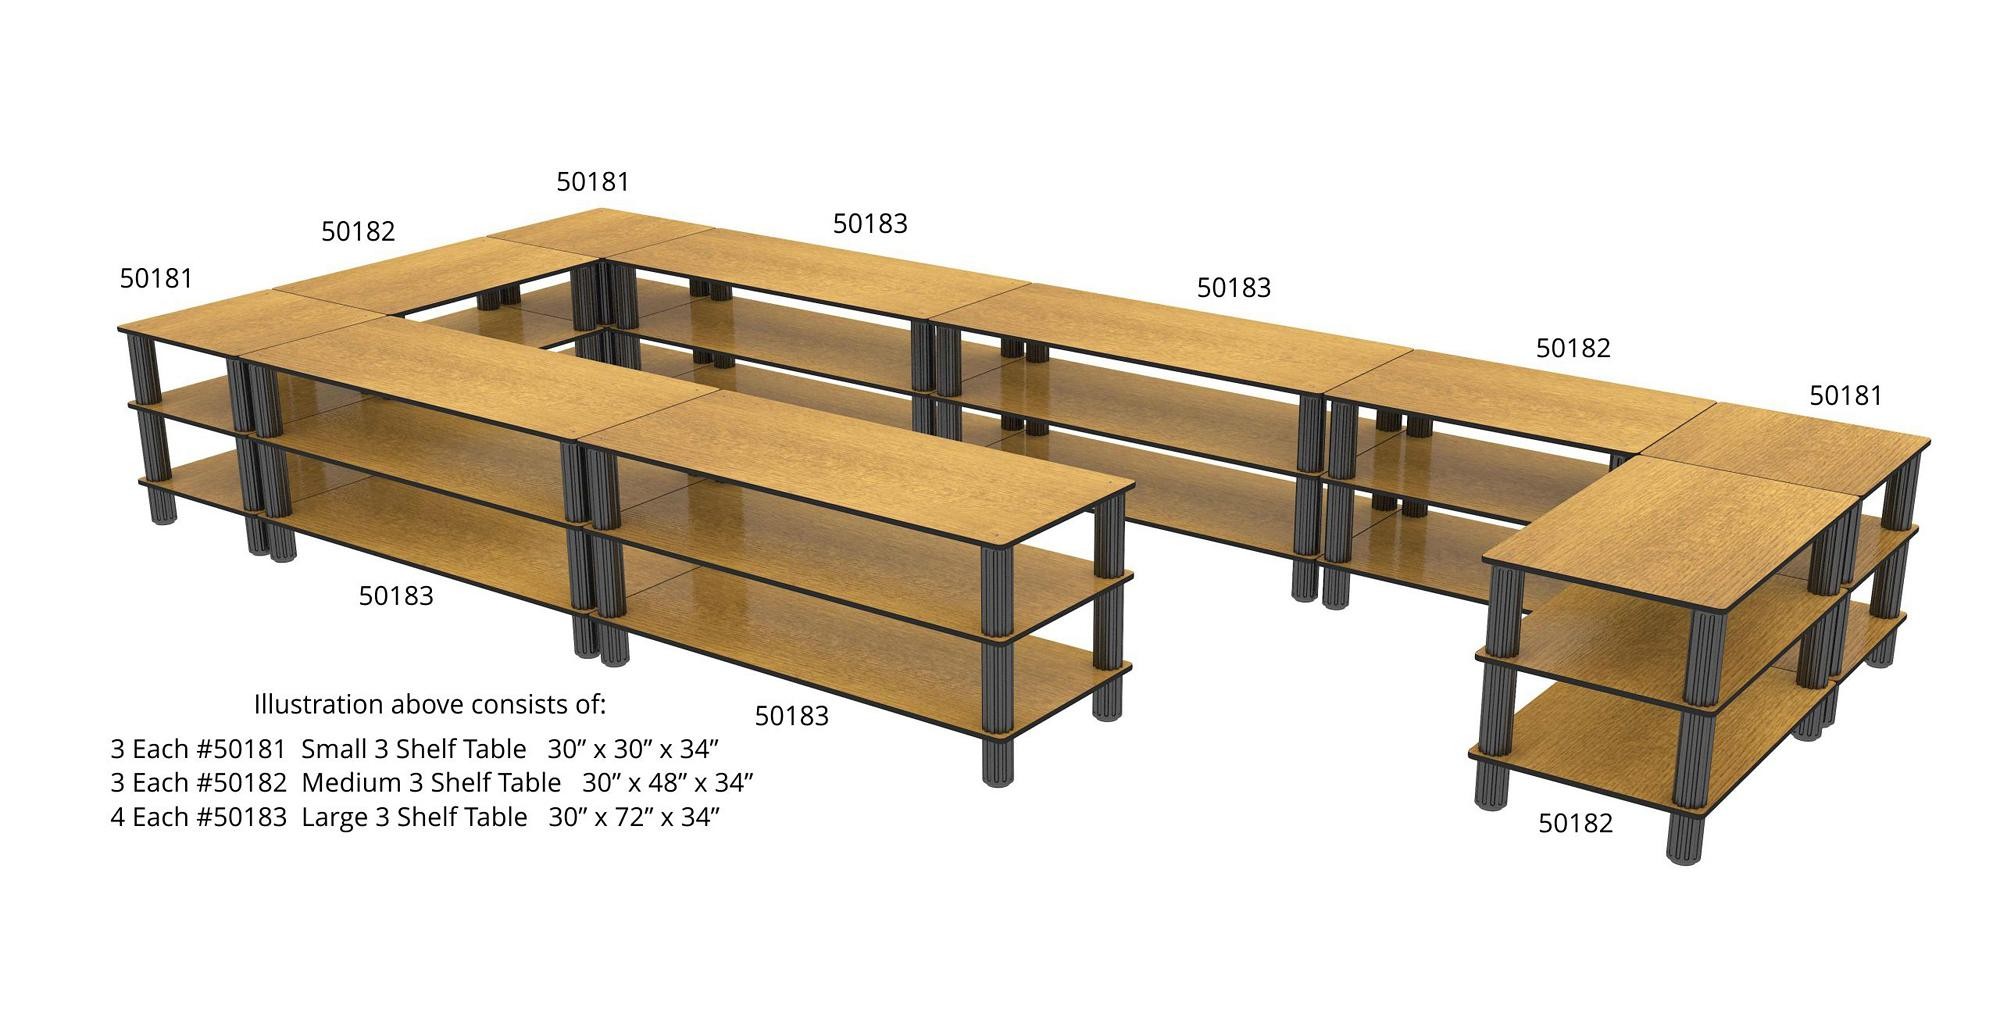 Obn Chef 50195LVWALNUT Small Corner Shelf Flex Table with Walnut Finish, 30" x 30" x 46"